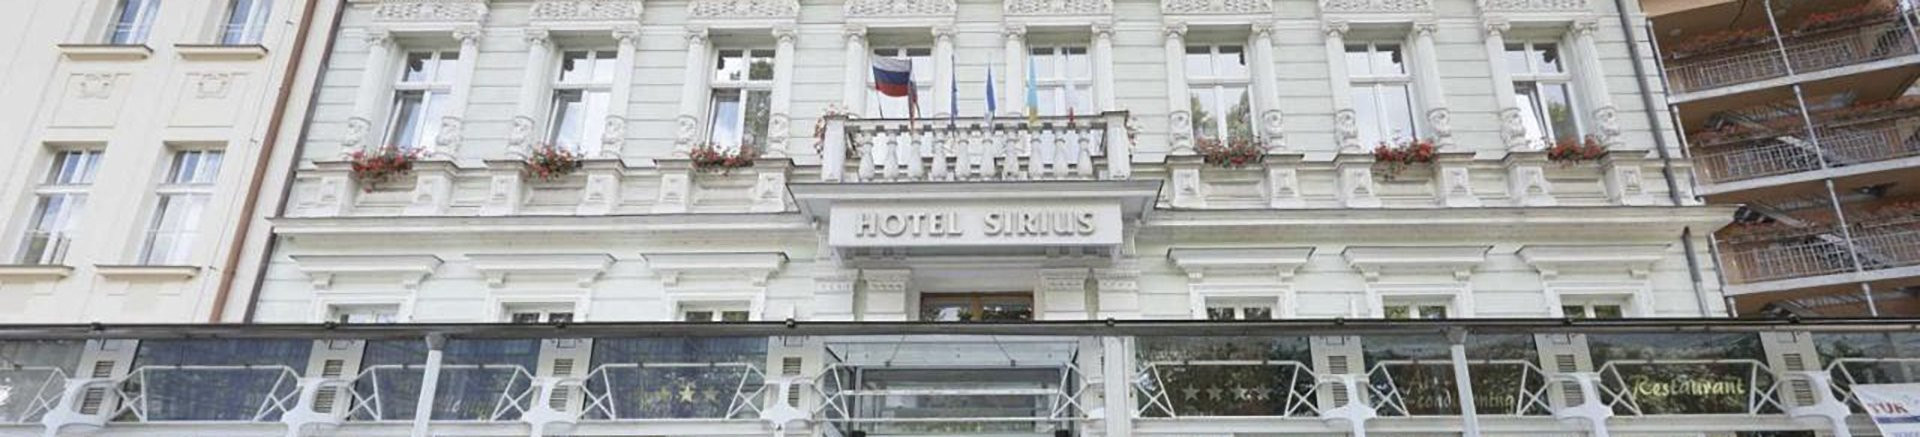 Карловы Вары - Park Hotel Sirius banner picture